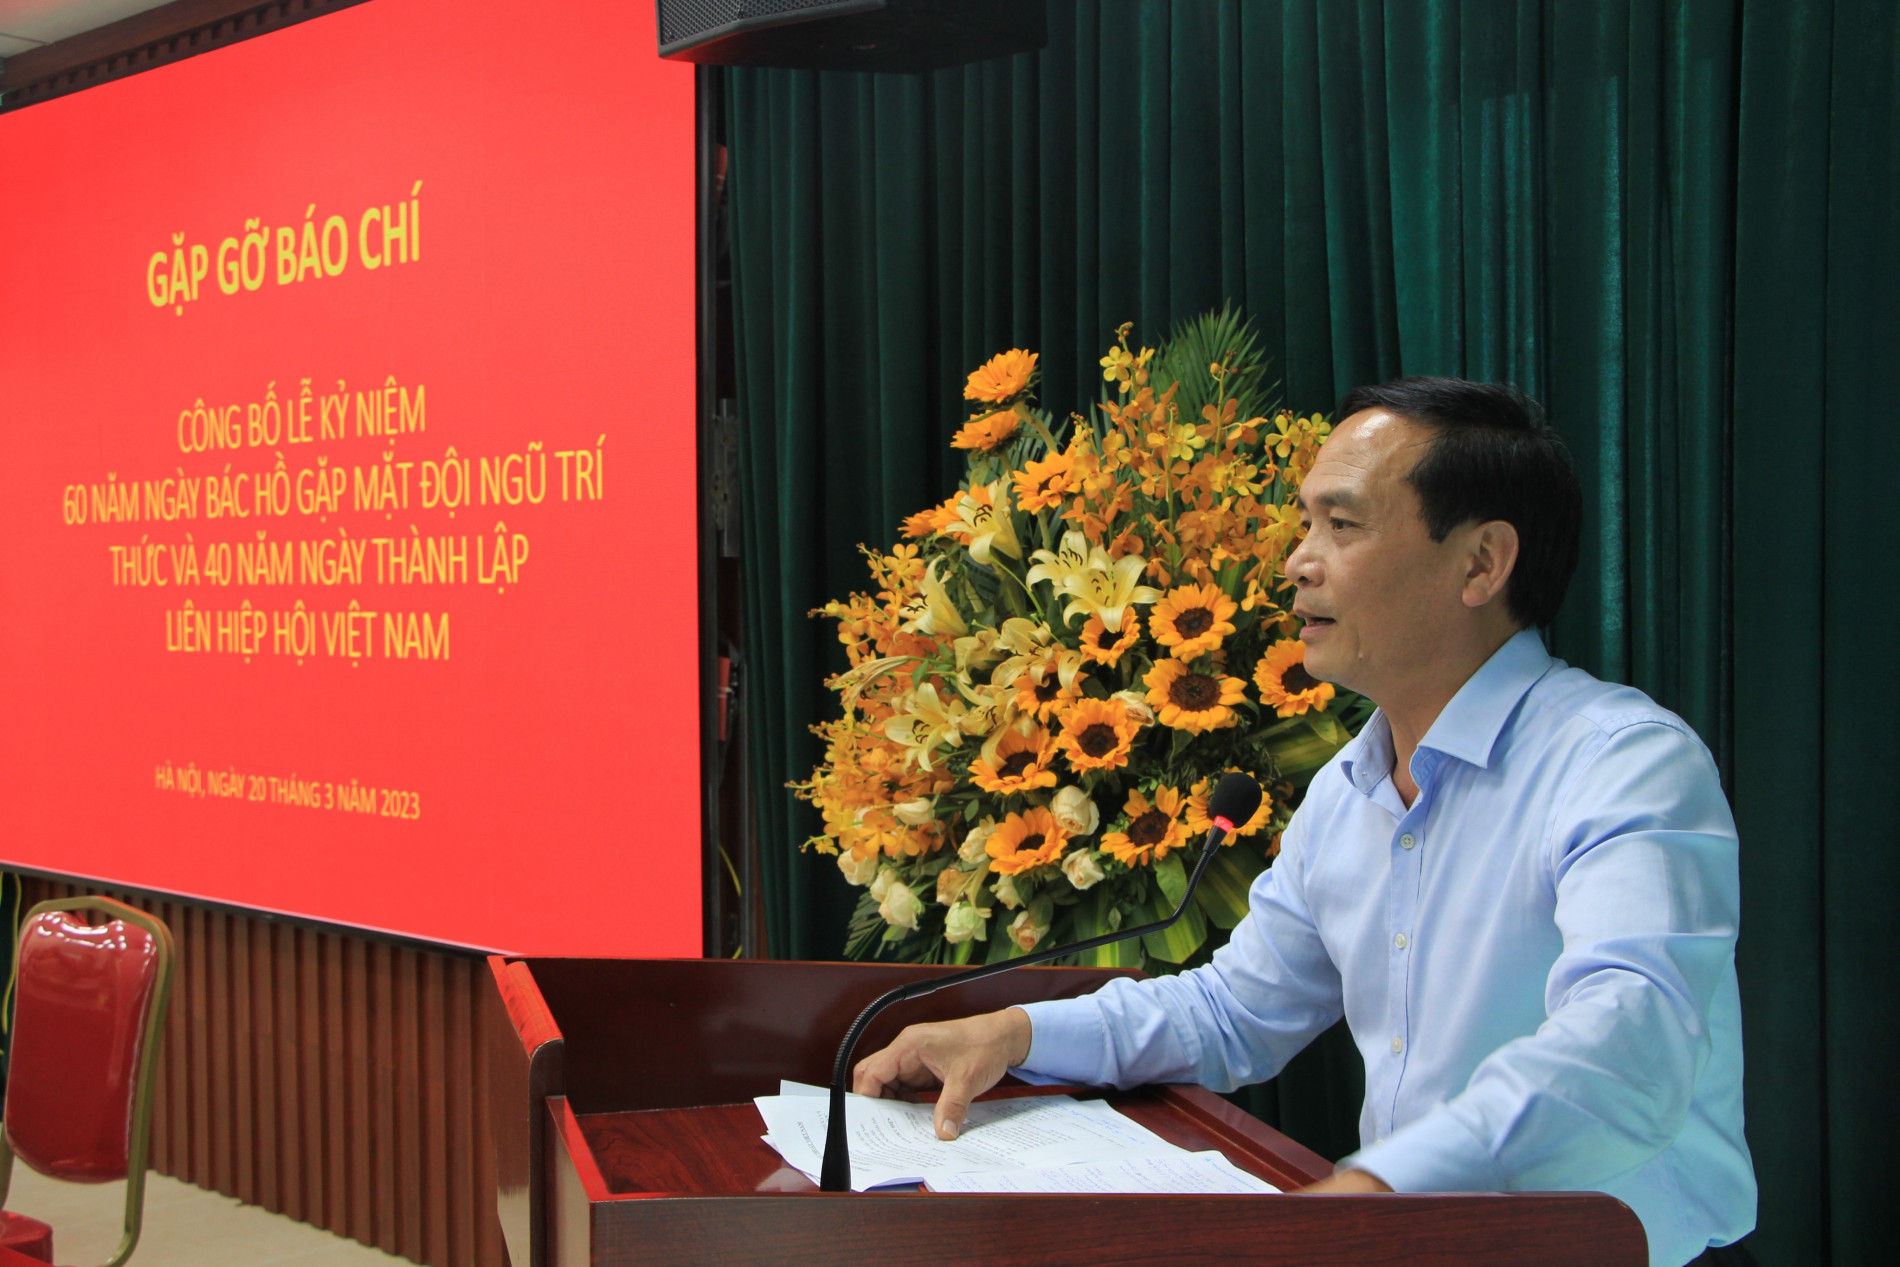  Liên hiệp hội Khoa học và Kỹ thuật Việt Nam kỷ niệm 40 năm thành lập